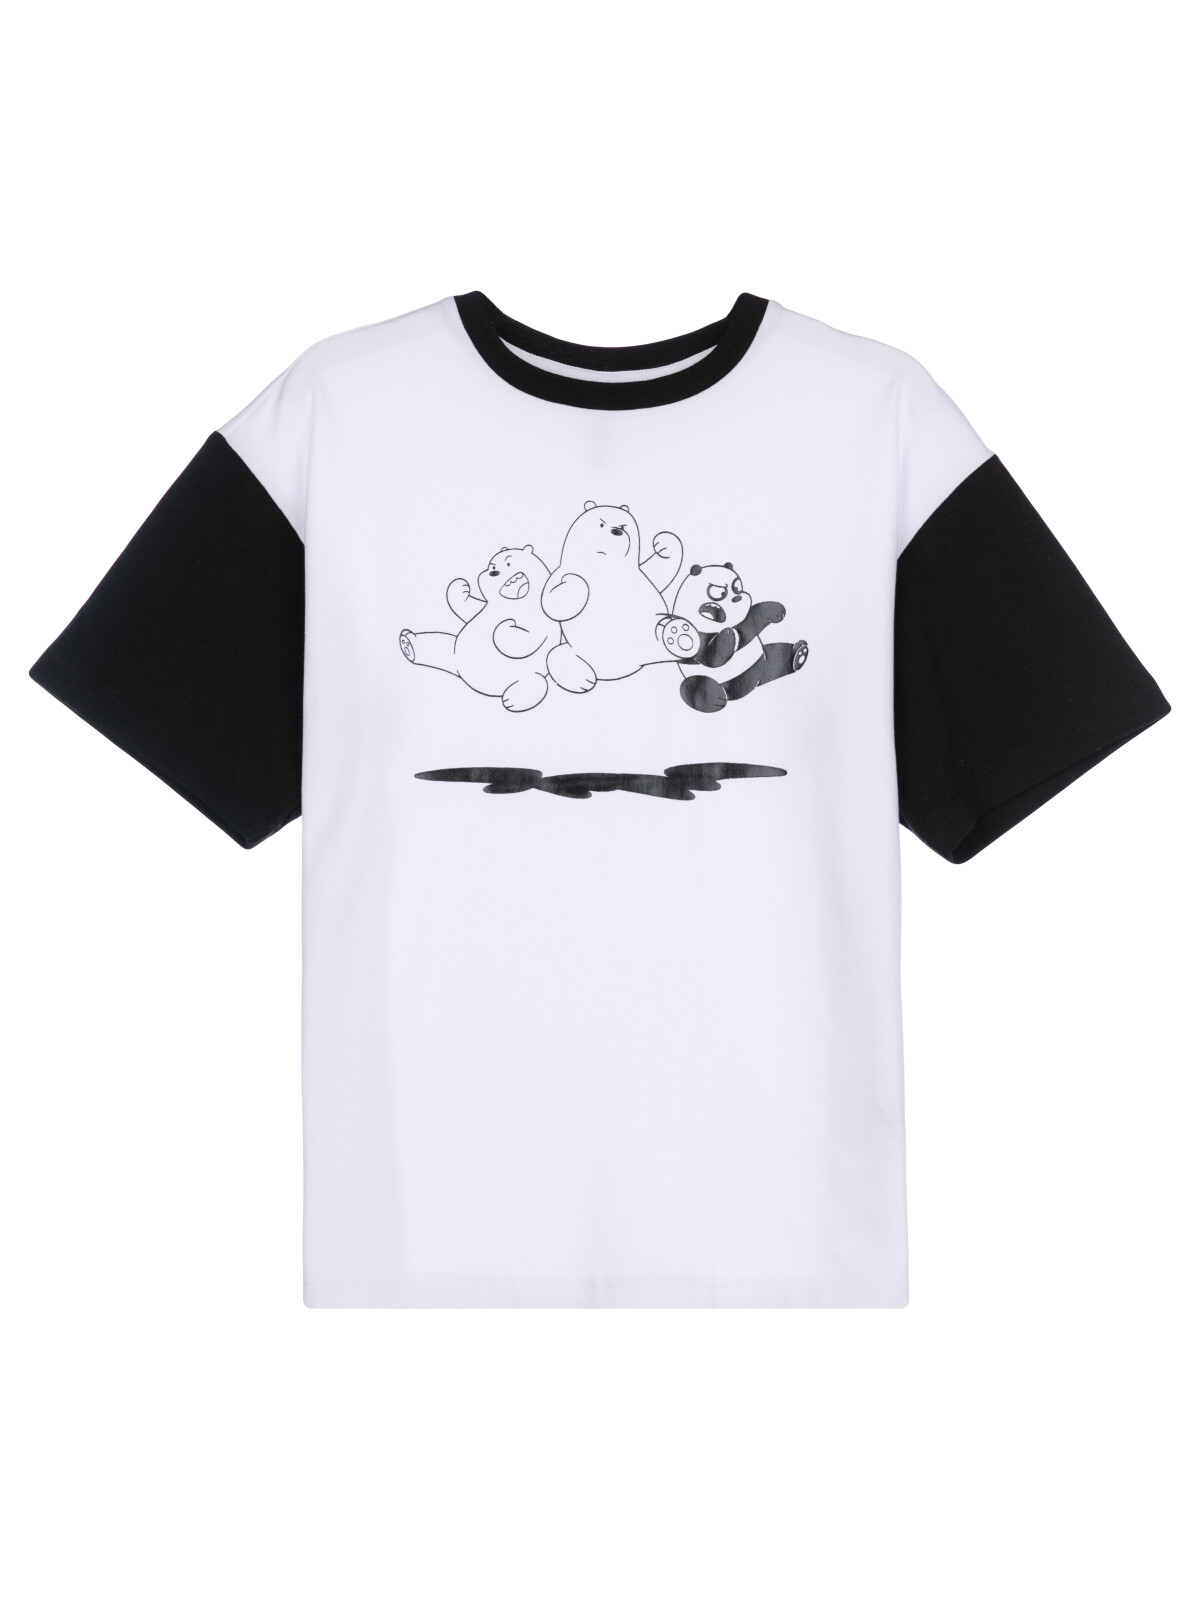 Фуфайка трикотажная для мальчиков PlayToday (футболка), белый,черный, 134 фуфайка трикотажная для мальчиков футболка